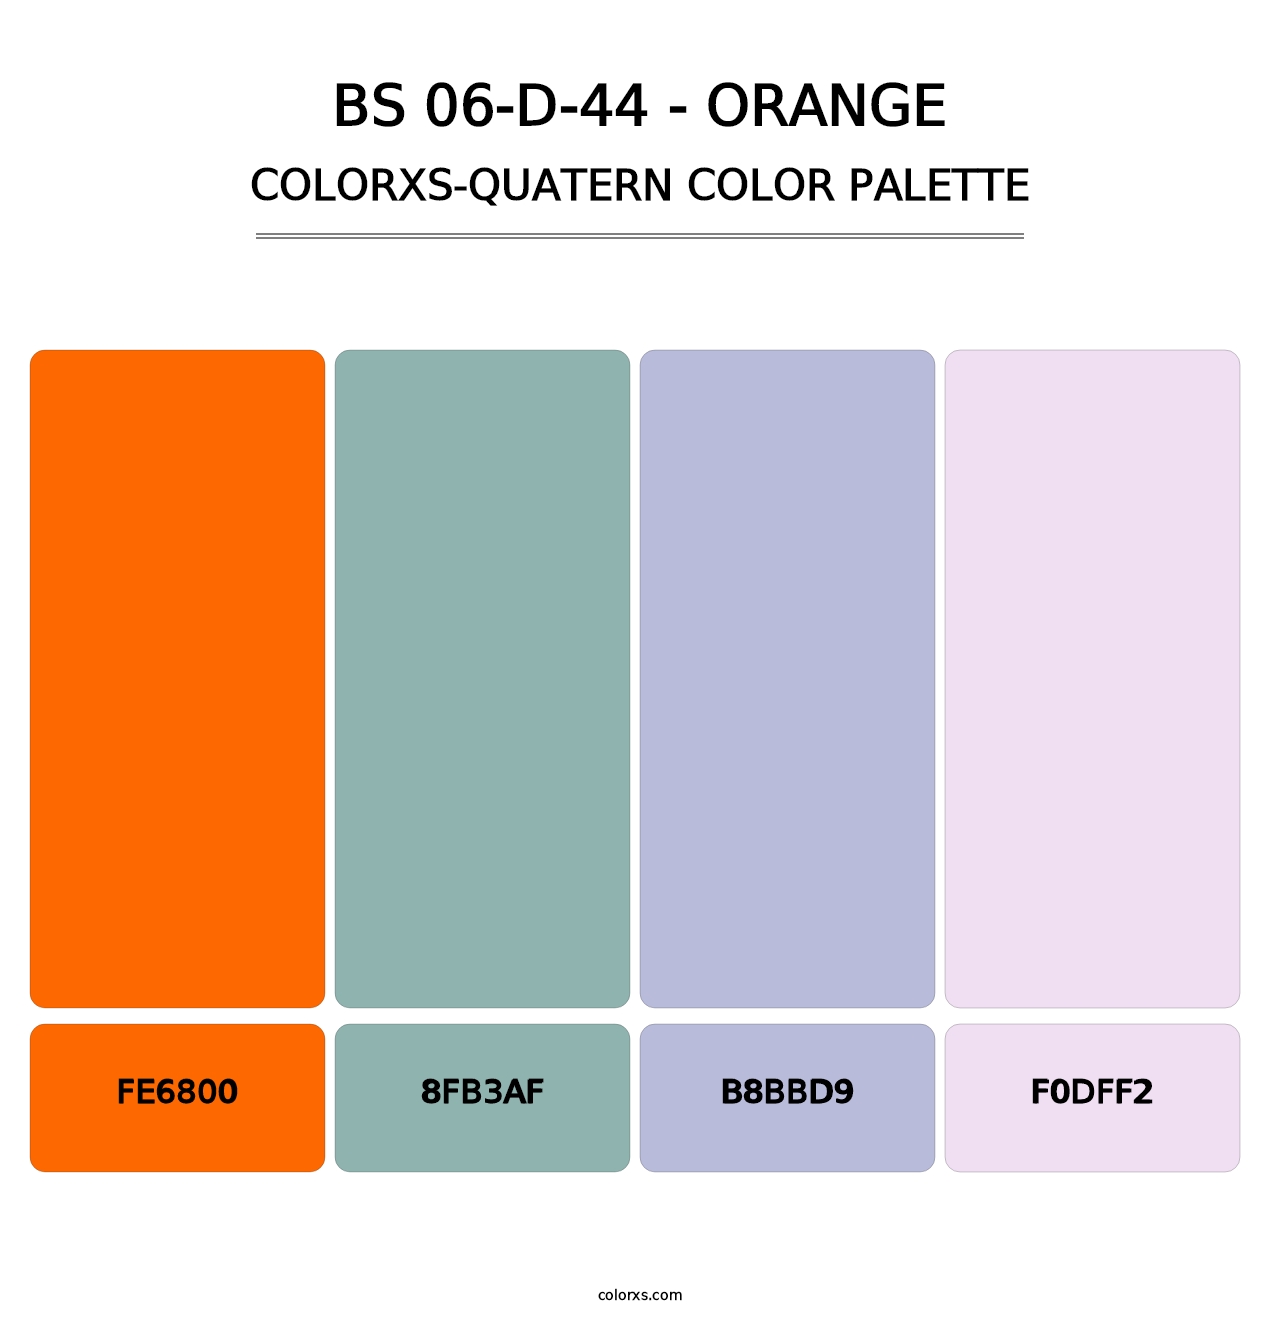 BS 06-D-44 - Orange - Colorxs Quatern Palette